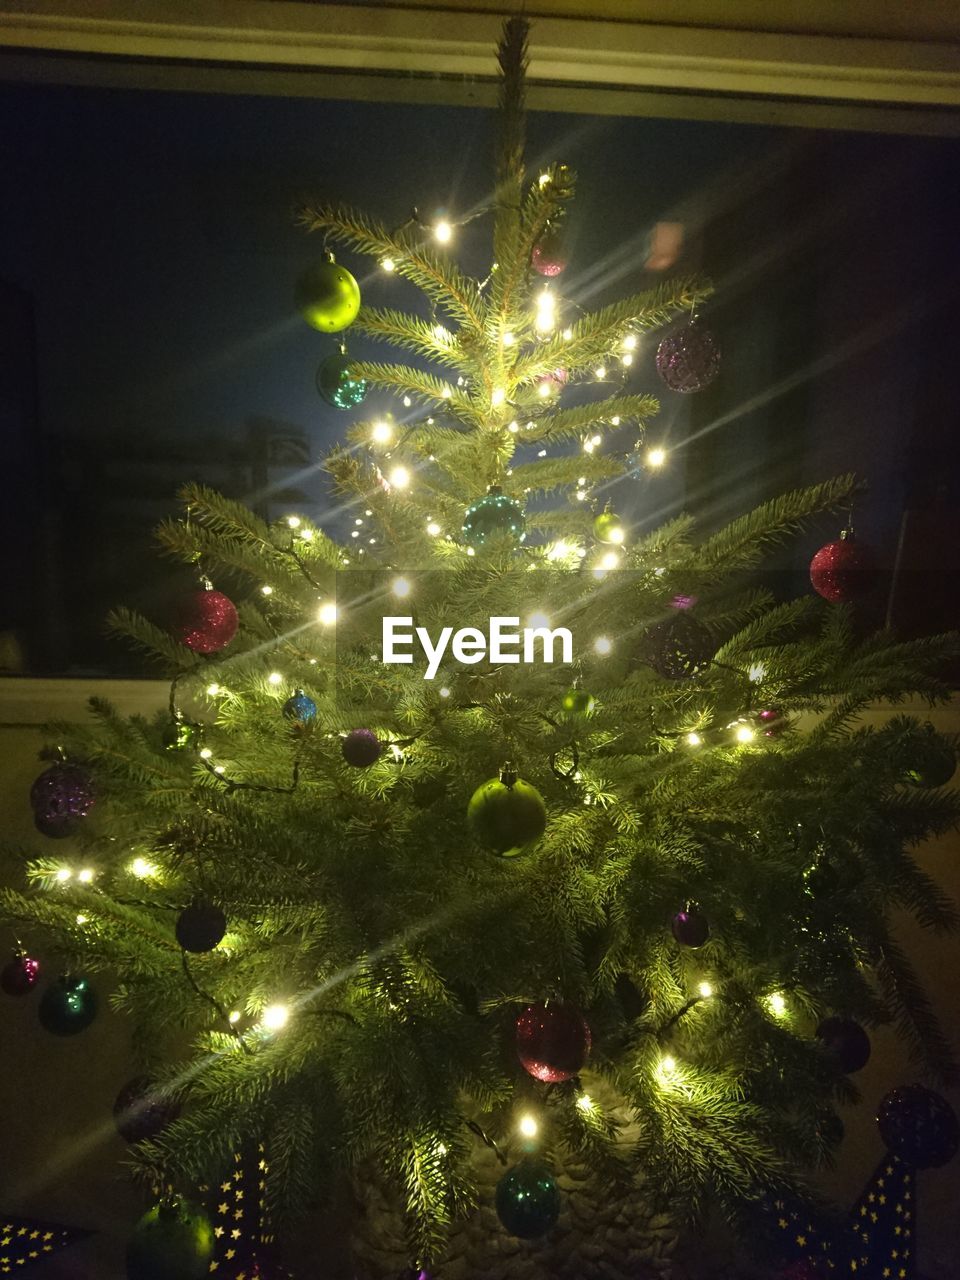 ILLUMINATED CHRISTMAS TREE IN SKY AT NIGHT